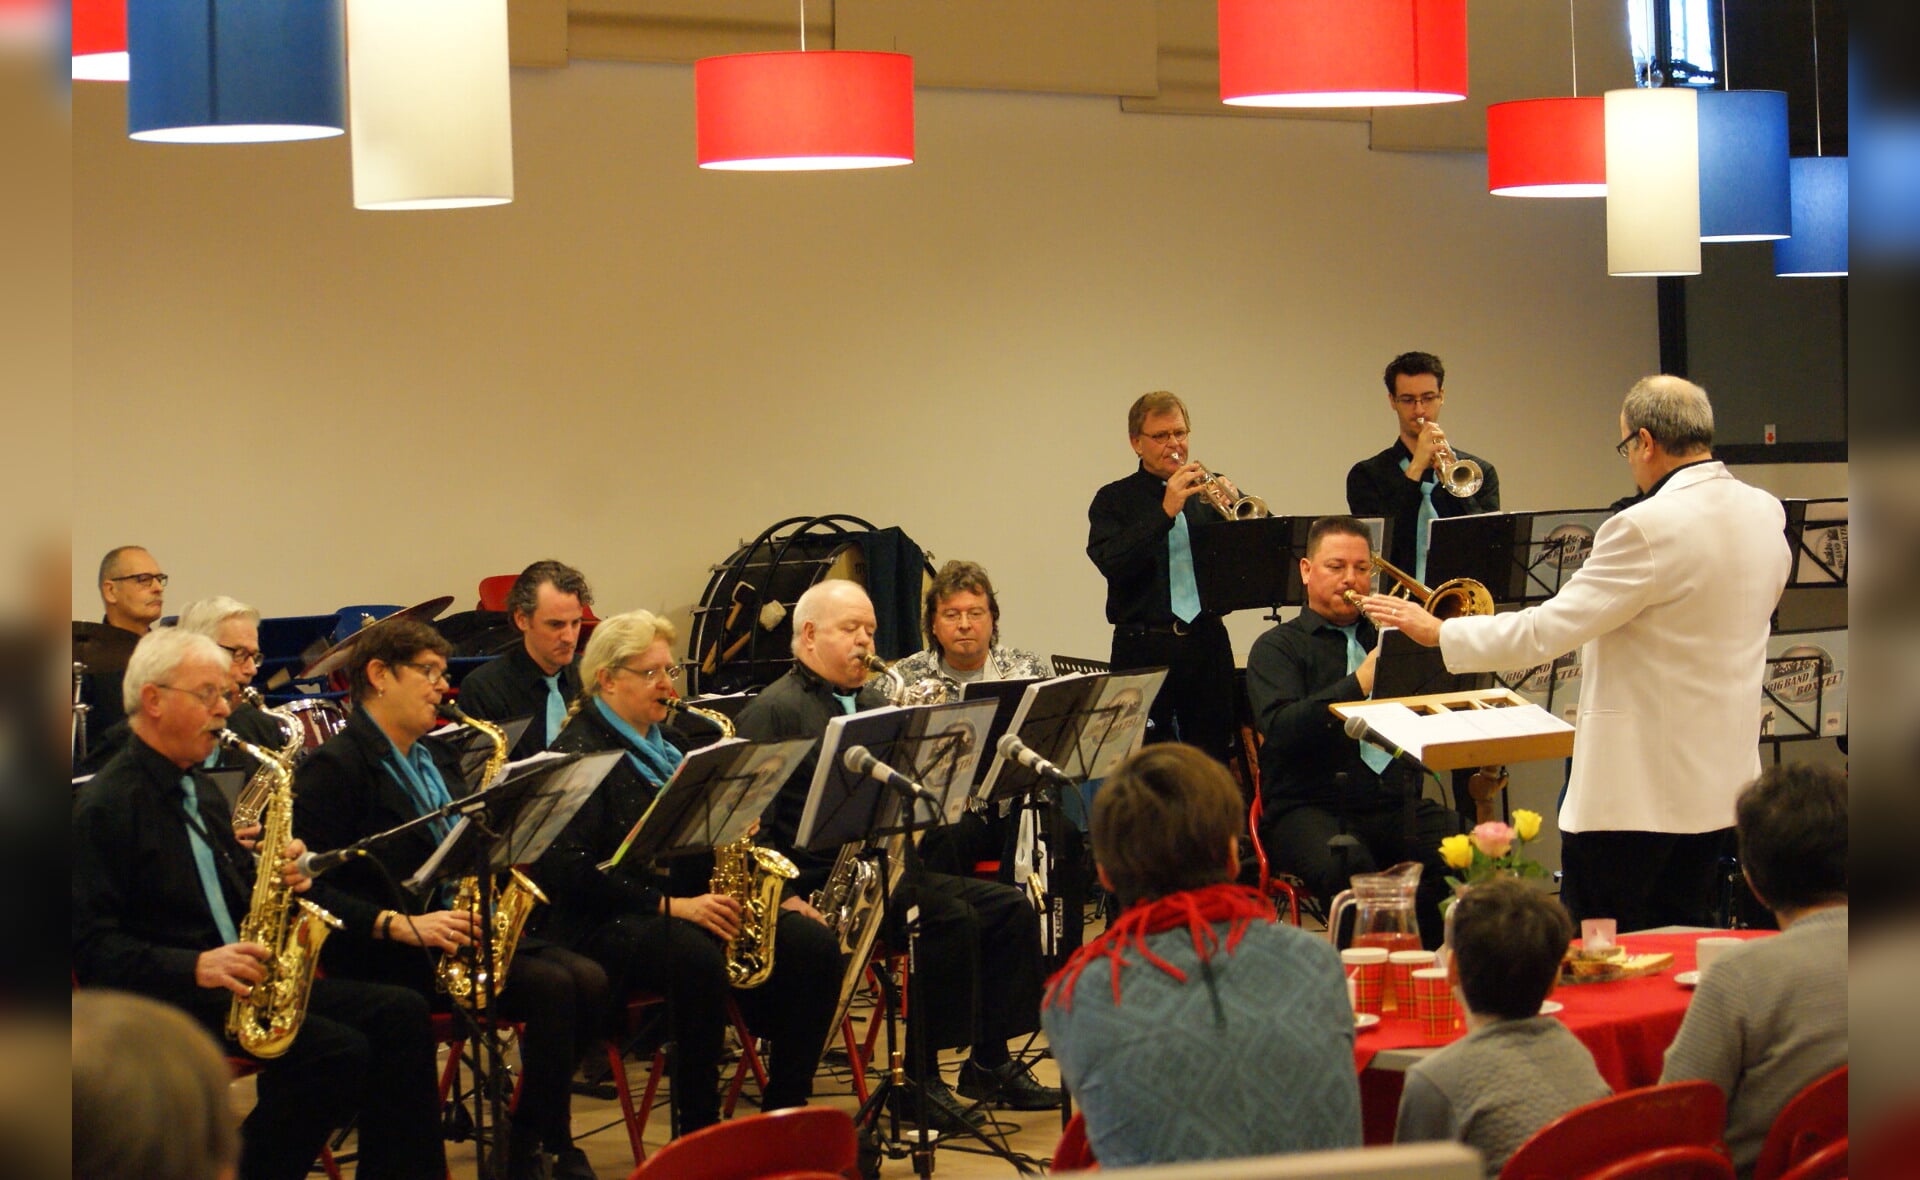 De Big Band Boxtel opent het nieuwjaarsconcert van de Gildenbondsharmonie in Boxtel. (Foto: Marc Cleutjens).